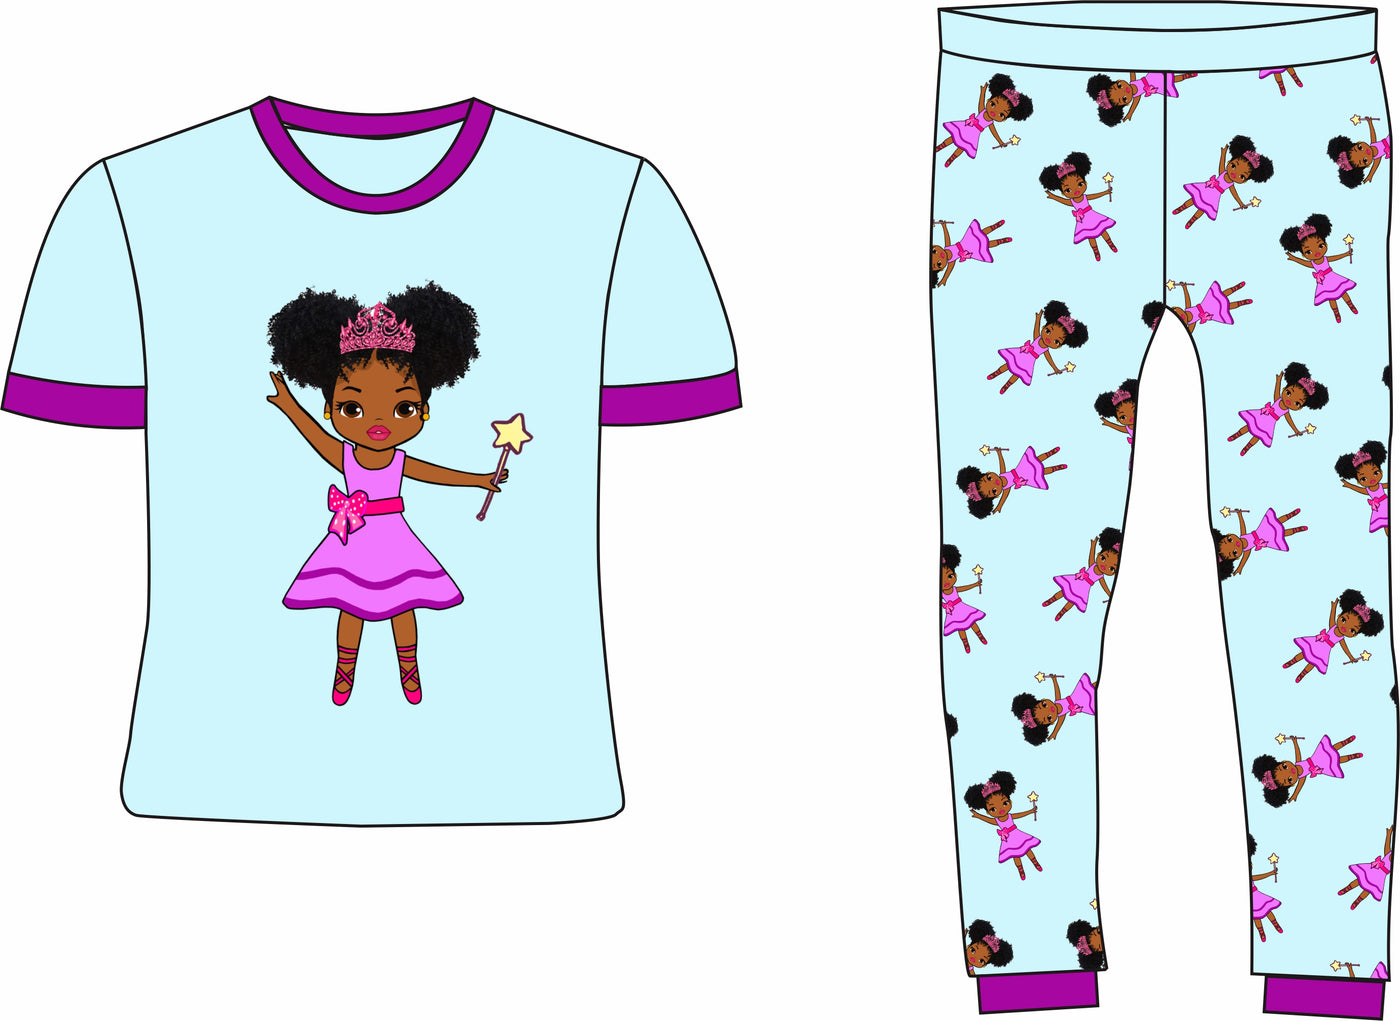 Fairy Princess Girl Pajamas 2-PCS PJs Set Blue Toddler Size 2T - 14